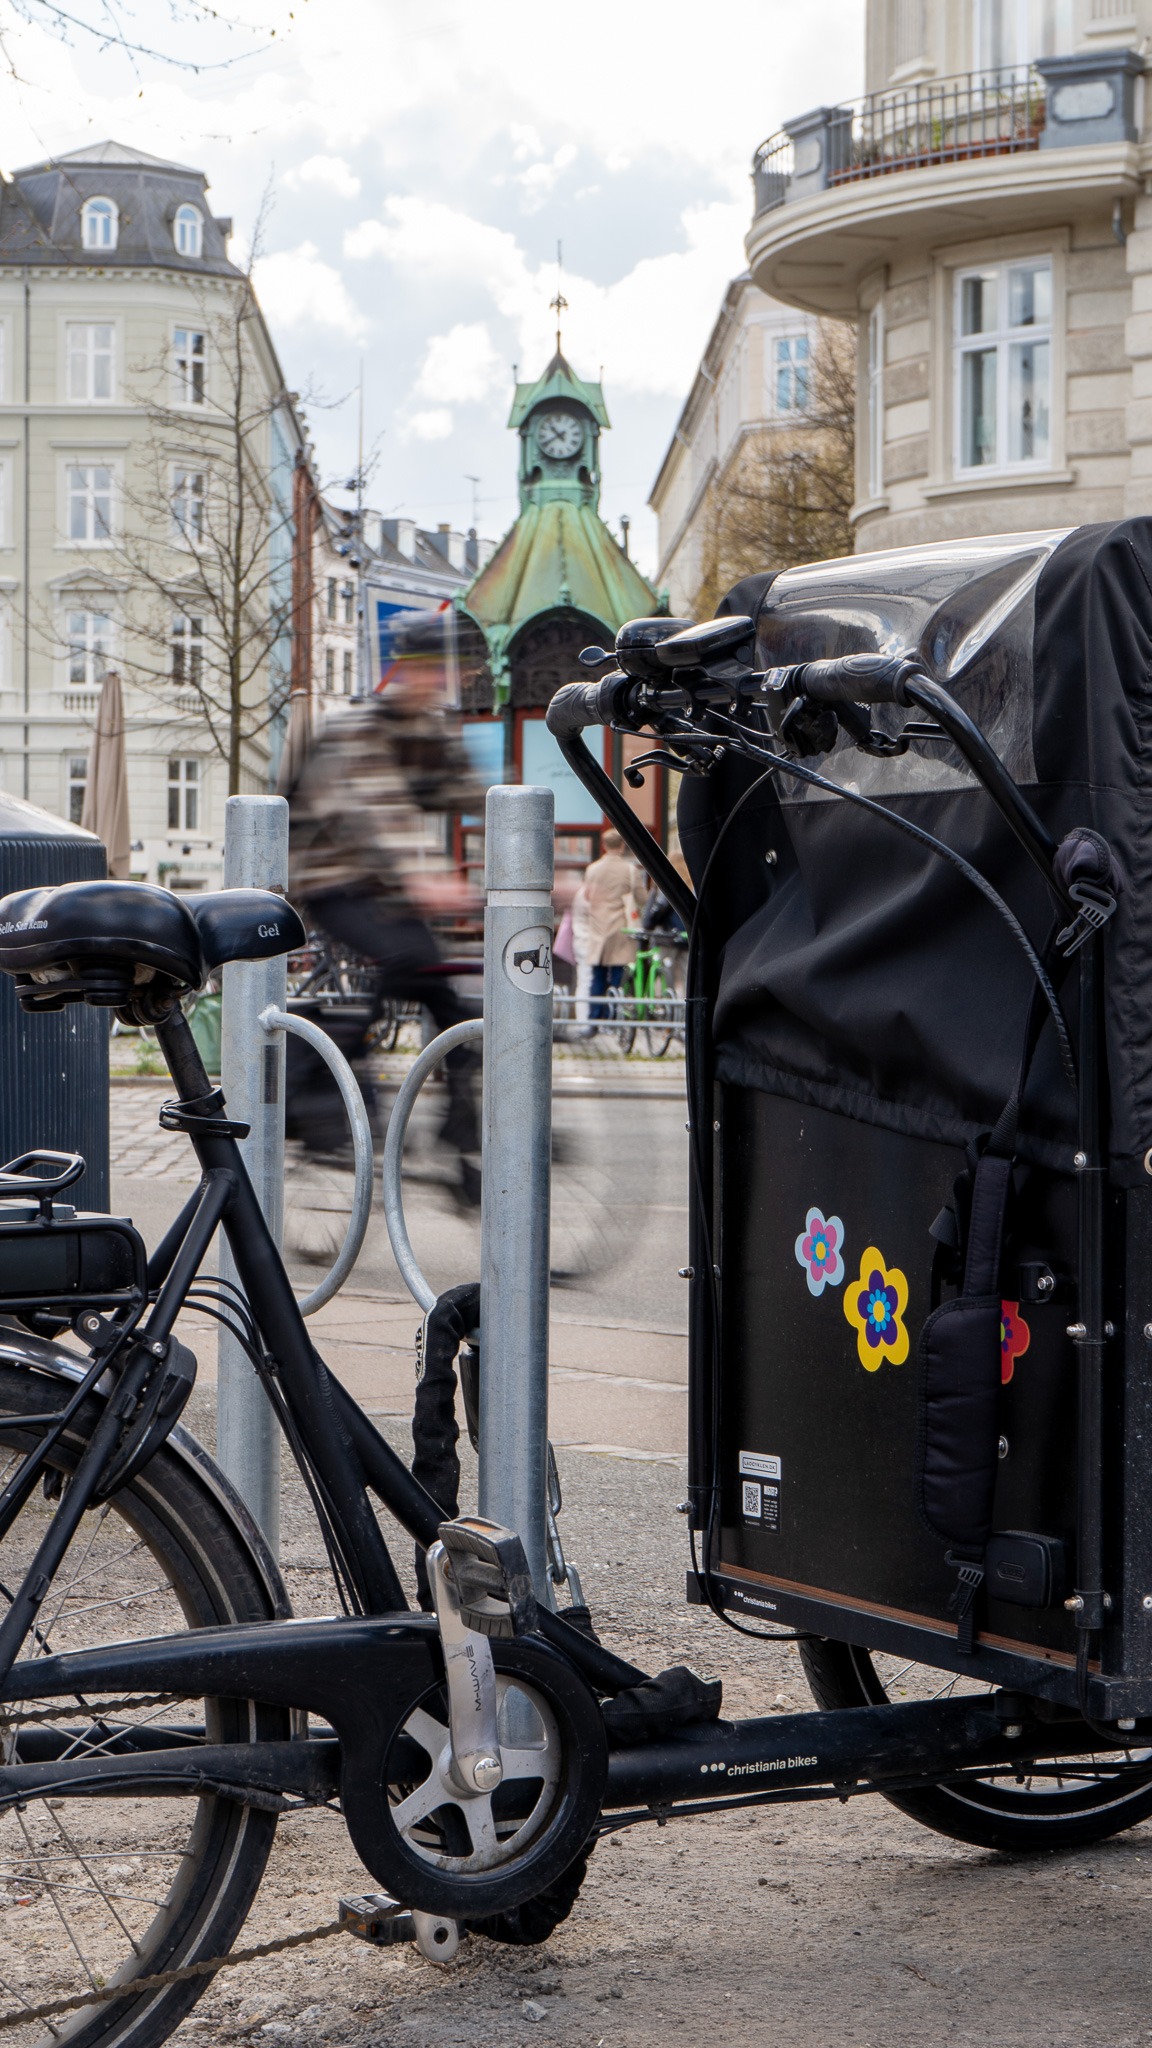 ظهرت أولى مواقف الدراجات في كوبنهاغن